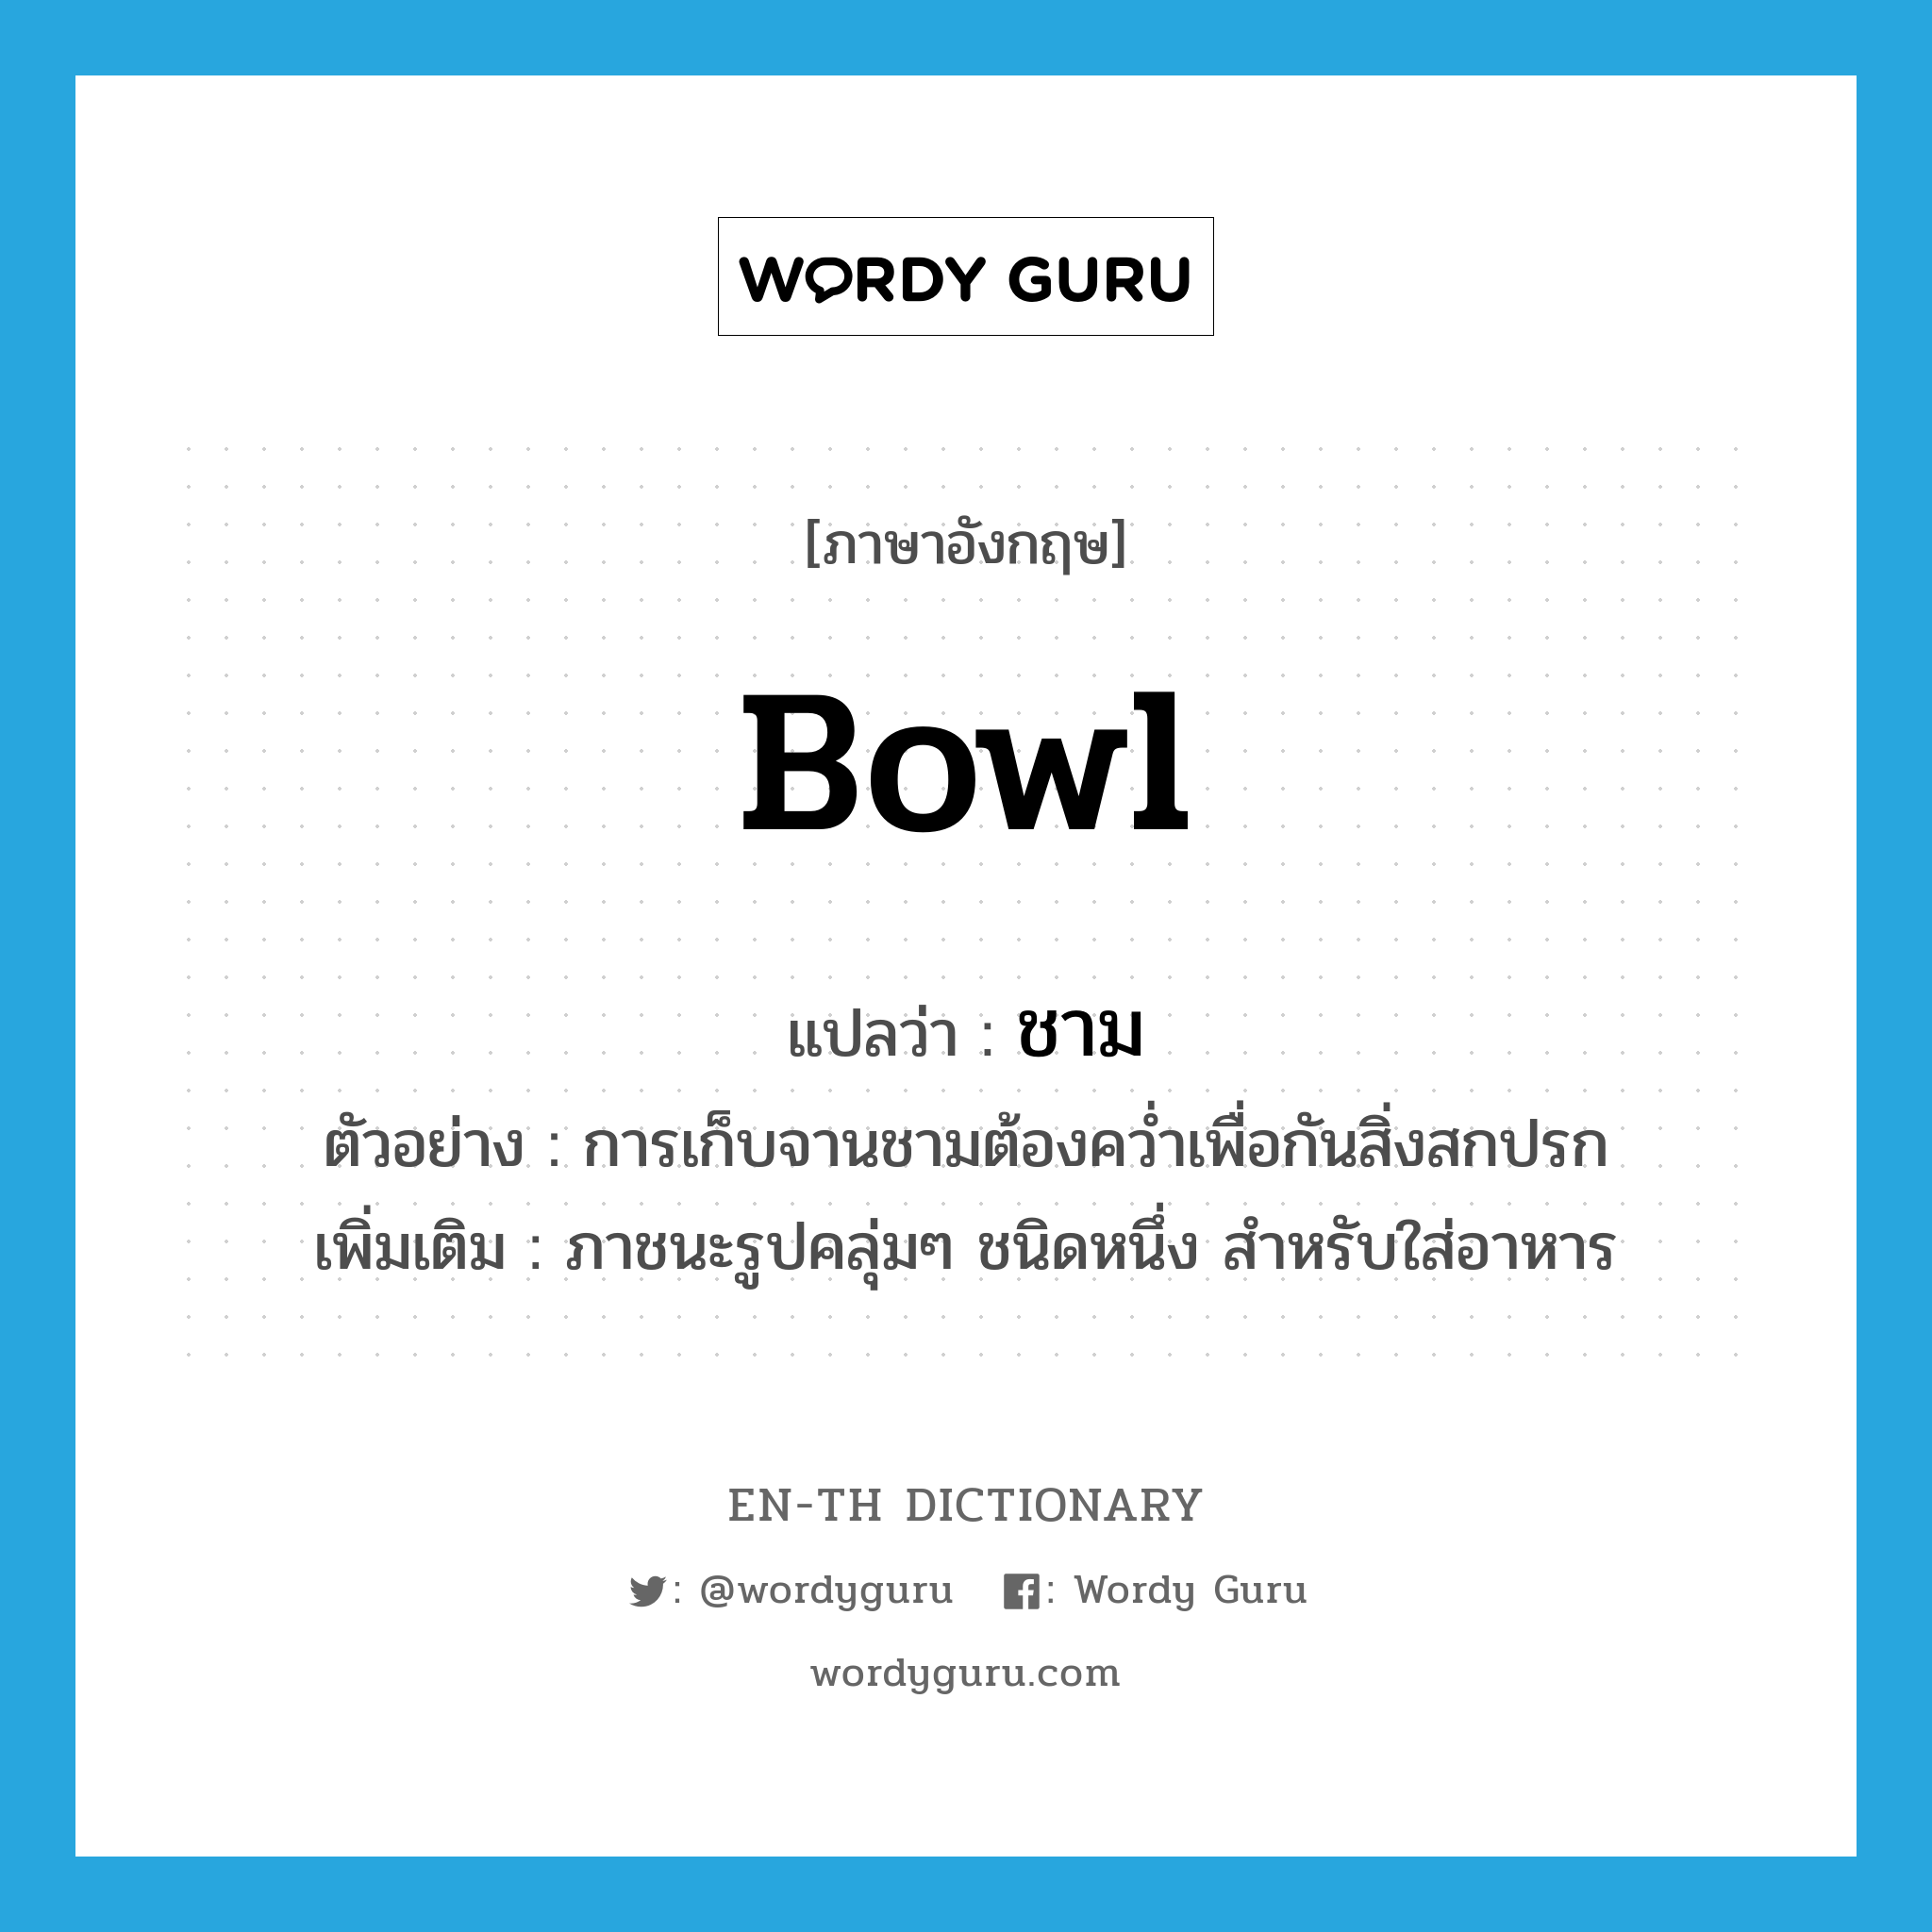 bowl แปลว่า?, คำศัพท์ภาษาอังกฤษ bowl แปลว่า ชาม ประเภท N ตัวอย่าง การเก็บจานชามต้องคว่ำเพื่อกันสิ่งสกปรก เพิ่มเติม ภาชนะรูปคลุ่มๆ ชนิดหนึ่ง สำหรับใส่อาหาร หมวด N